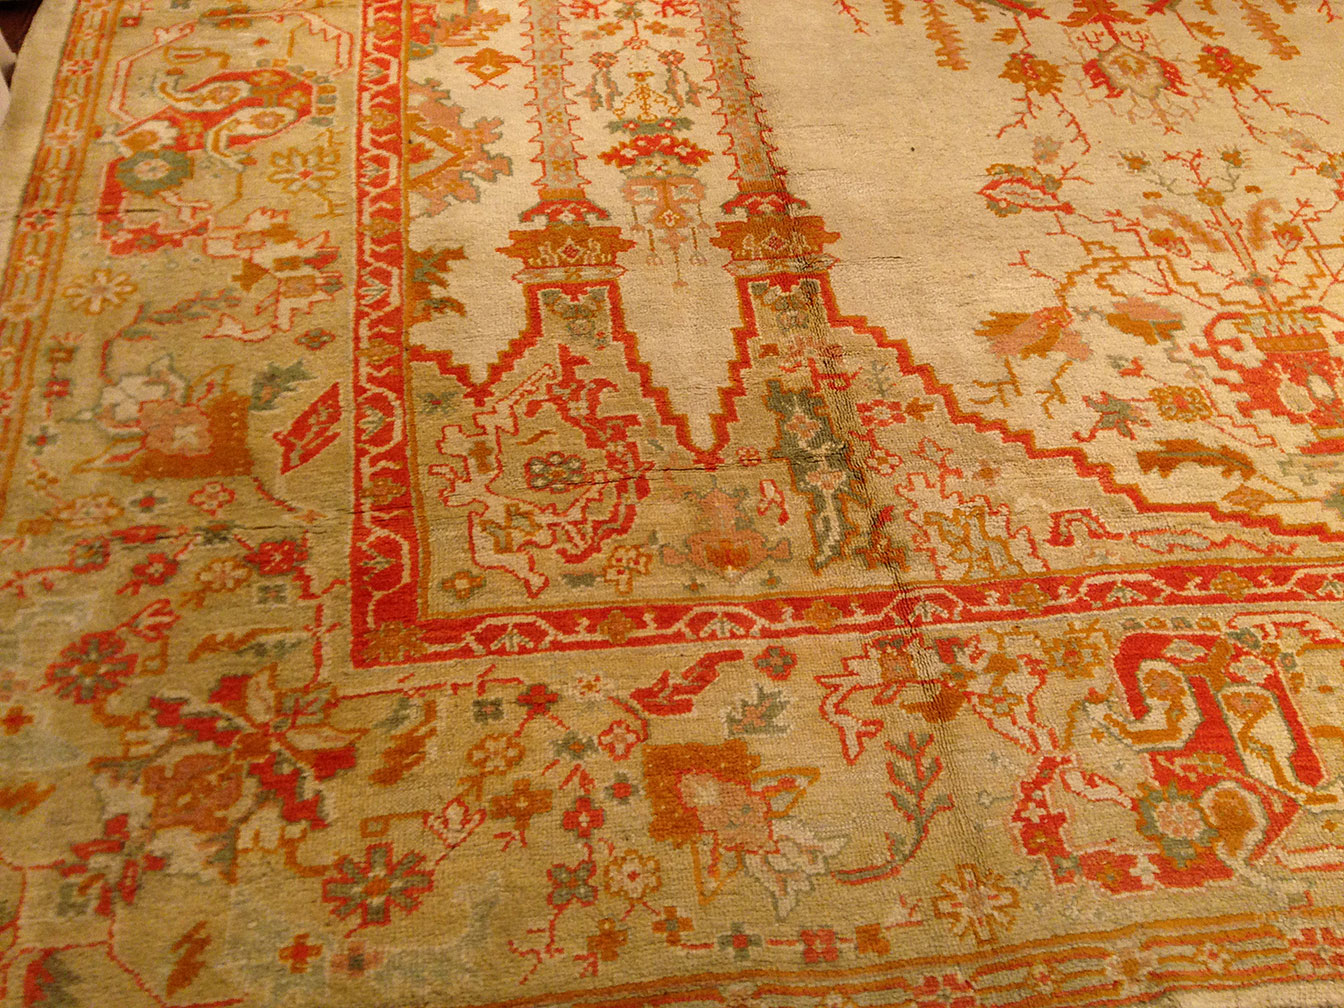 Antique oushak Carpet - # 50050